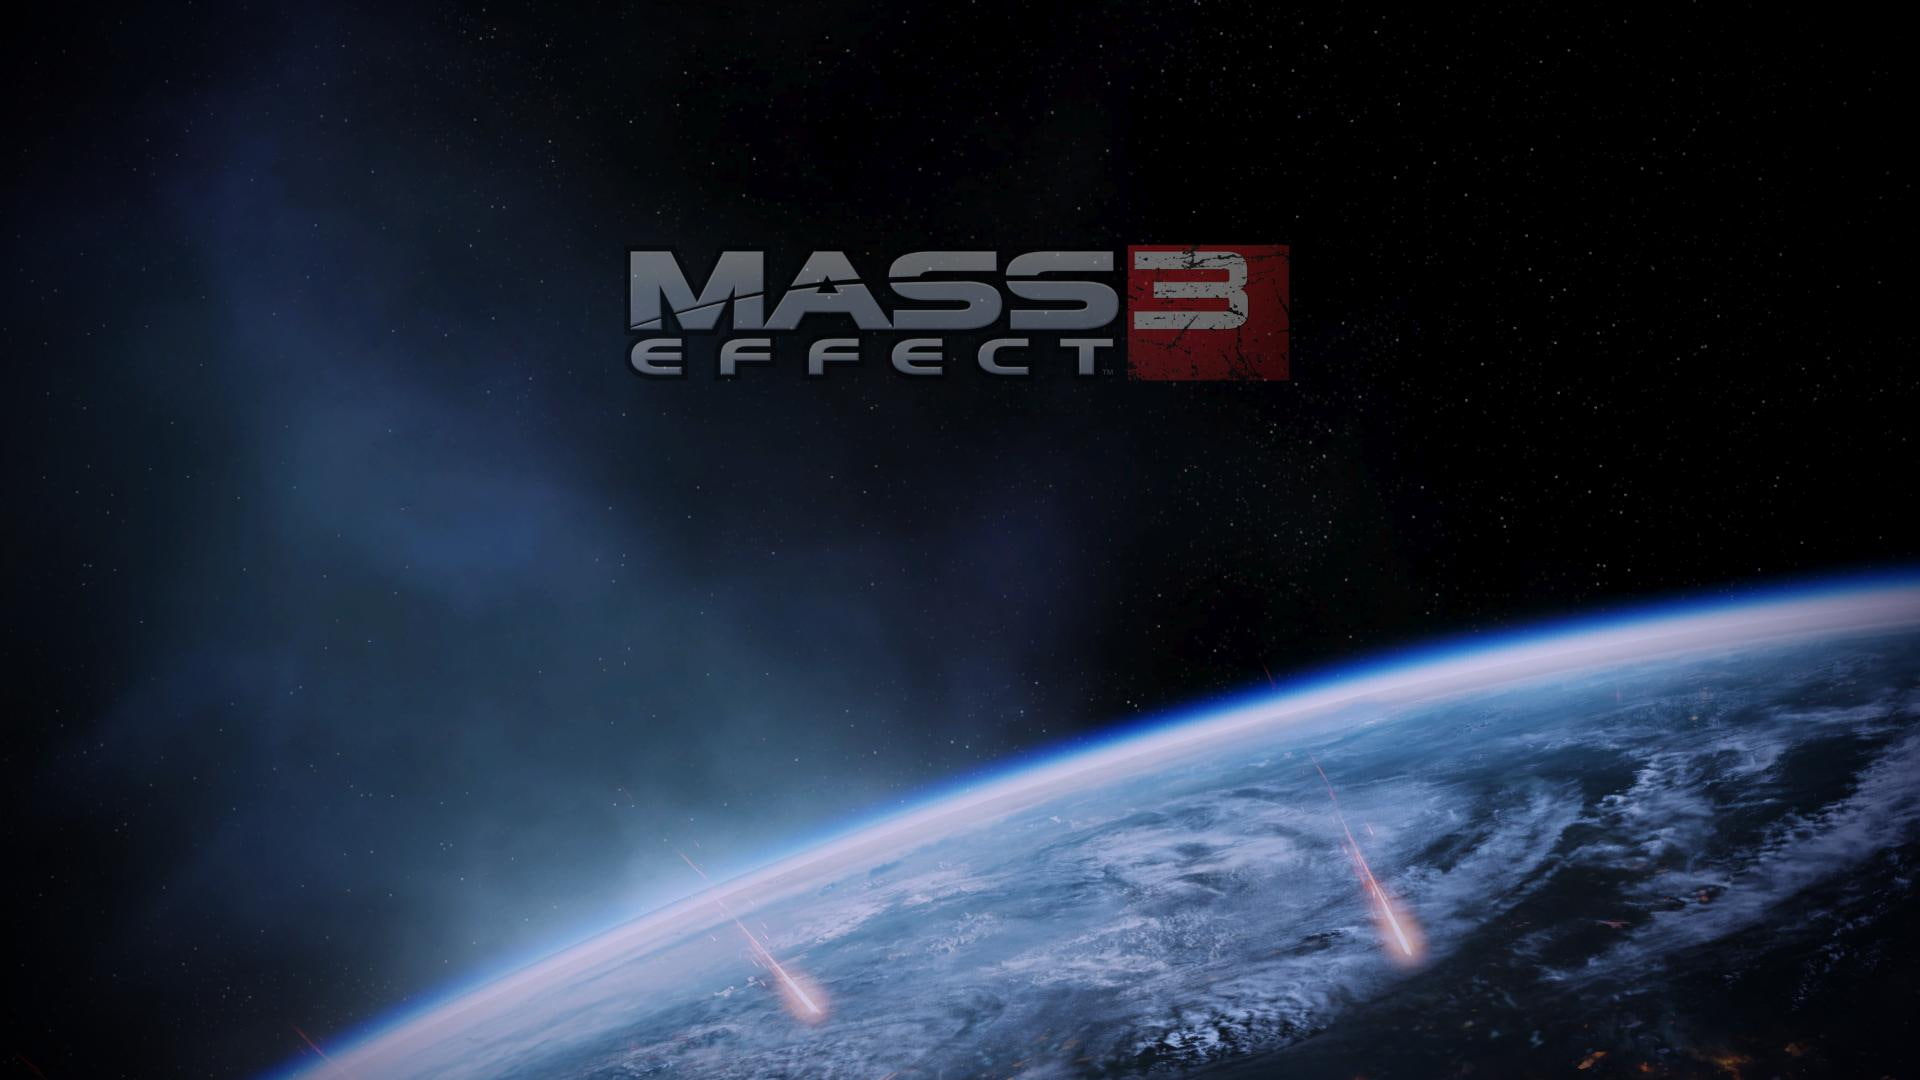 Mass Effect Planet Stars HD, mass effect 3 wallpaper, video games